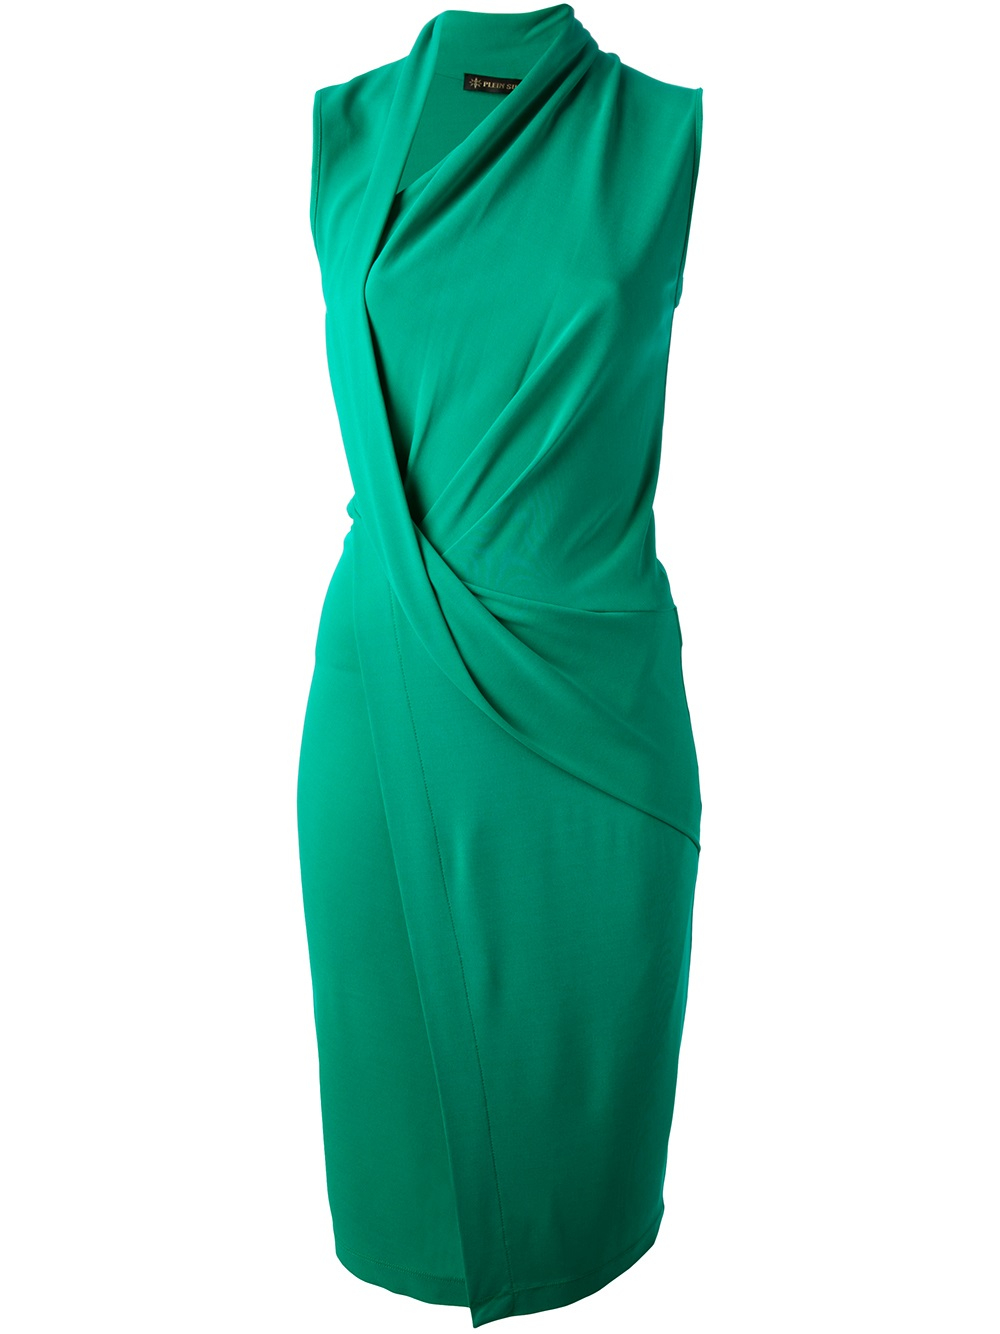 Lyst - Plein Sud Draped Jersey Dress in Green